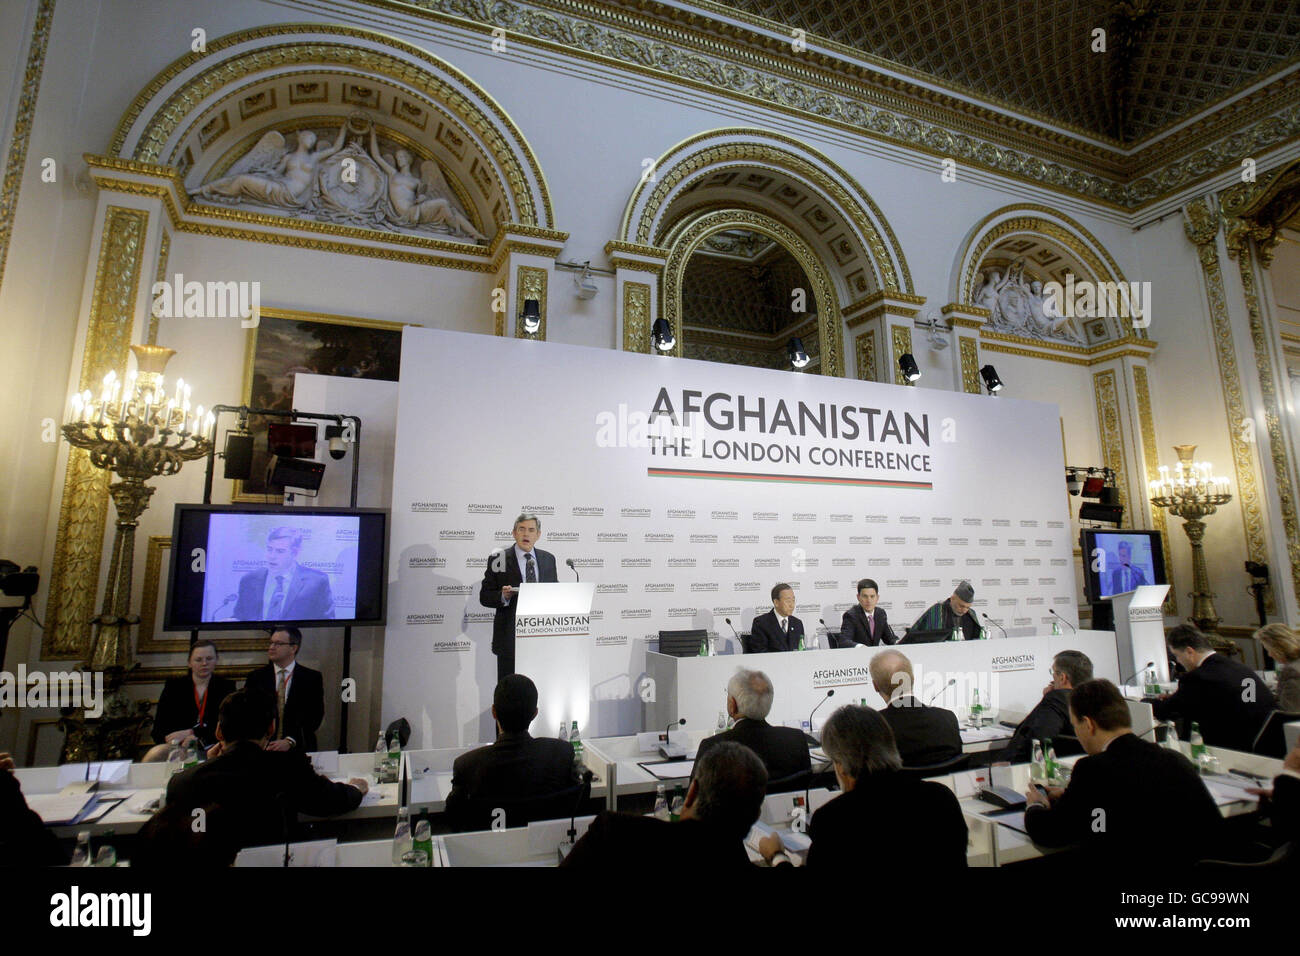 Le Premier ministre britannique Gordon Brown (à gauche) prononce un discours, comme le Secrétaire général de l'ONU Ban Ki-moon (2e à gauche), le ministre britannique des Affaires étrangères David Miliband (2e à droite) et le président afghan Hamid Karzaï (à droite) le regardent pendant la session d'ouverture de la Conférence sur l'Afghanistan à Londres. Banque D'Images